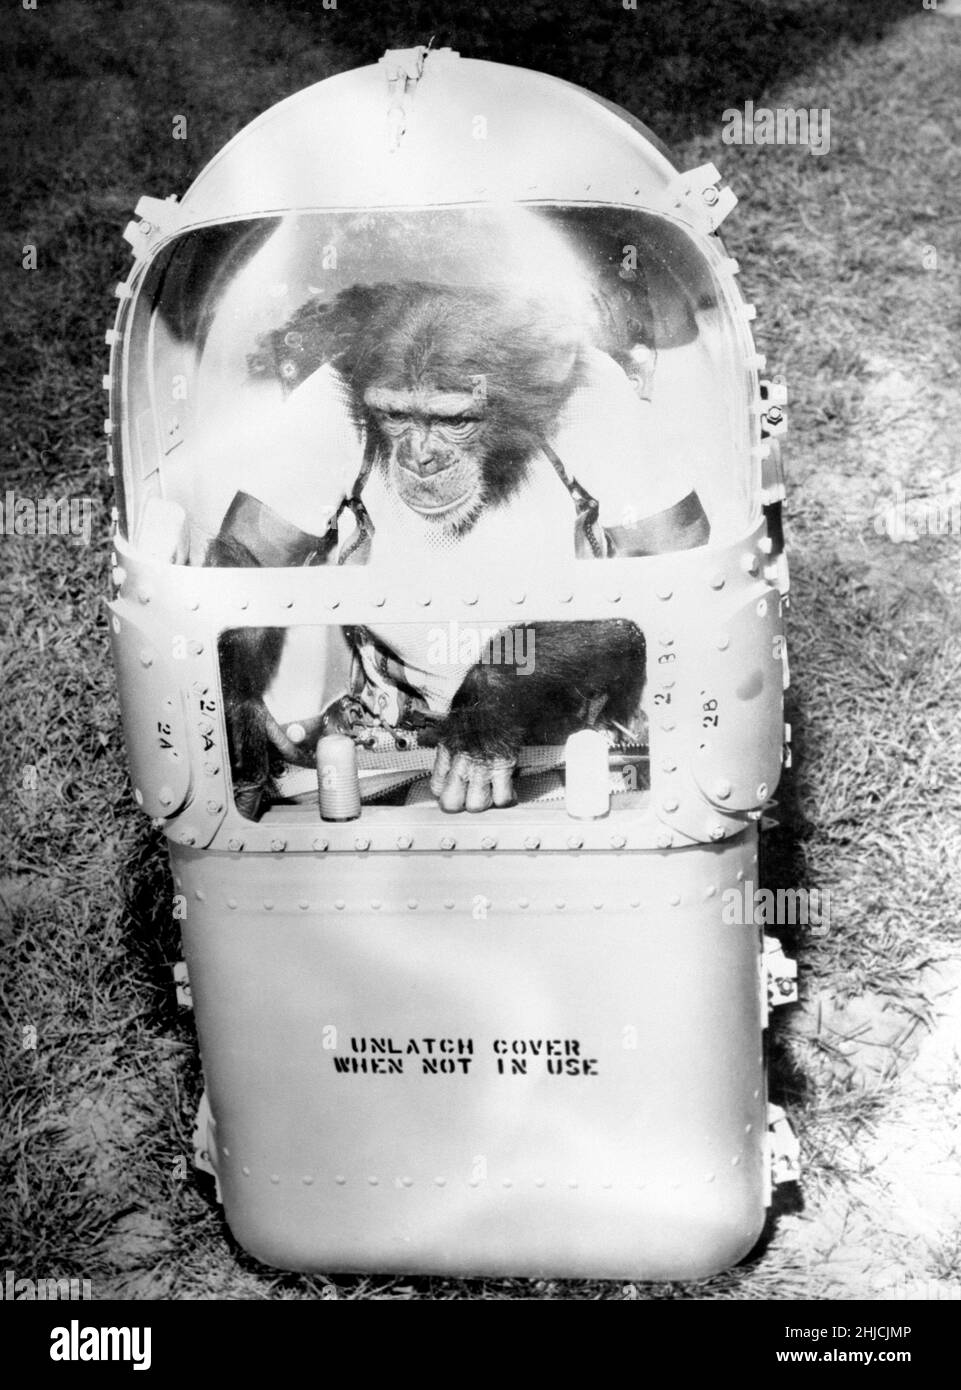 Ham dans son canapé de vol, après son vol.Le 31 janvier 1961, un lancement Mercury-Redstone à partir de Cape Canaveral a porté le chimpanzé, Ham, sur une distance de plus de 400 miles dans une trajectoire voûtée qui a atteint un sommet de 158 miles au-dessus de la Terre.La mission a été couronnée de succès et Ham a bien effectué sa tâche de traction de levier en réponse au feu clignotant. Banque D'Images